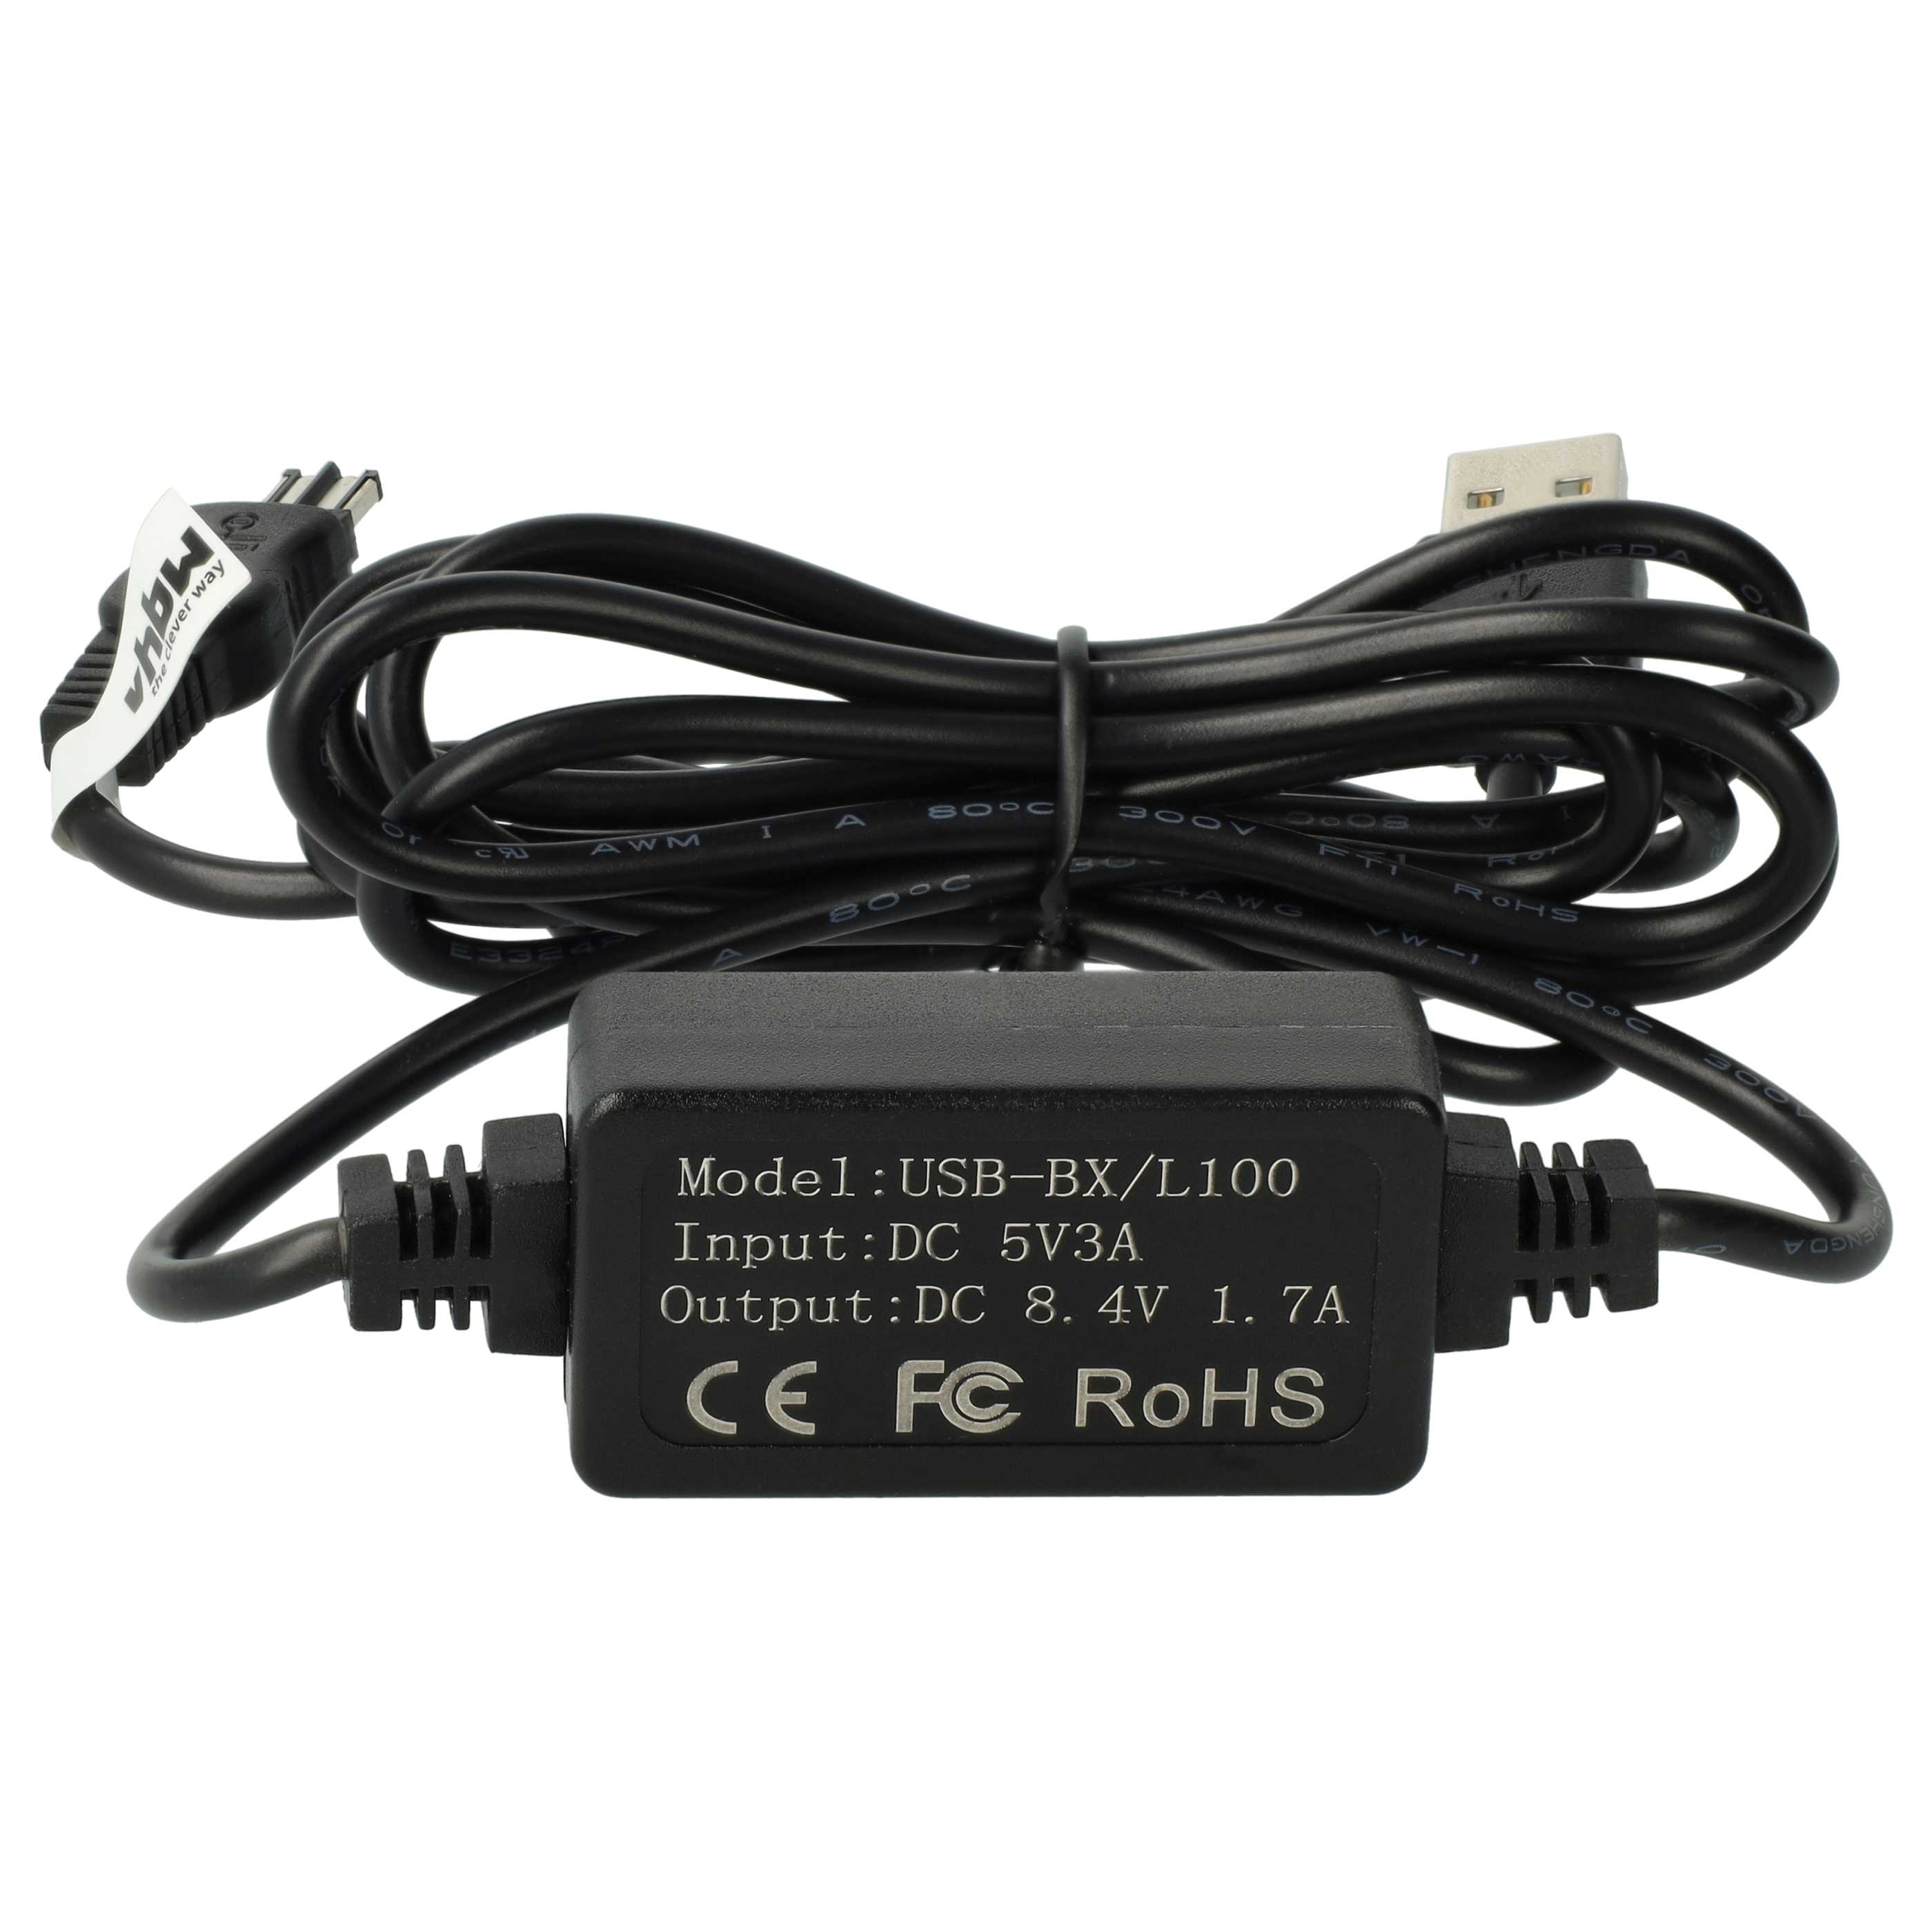 USB Netzteil als Ersatz für Sony AC-L10, AC-L100, AC-L10A, AC-L15A, AC-L15B, AC-L10B, AC-L15 für Kamera